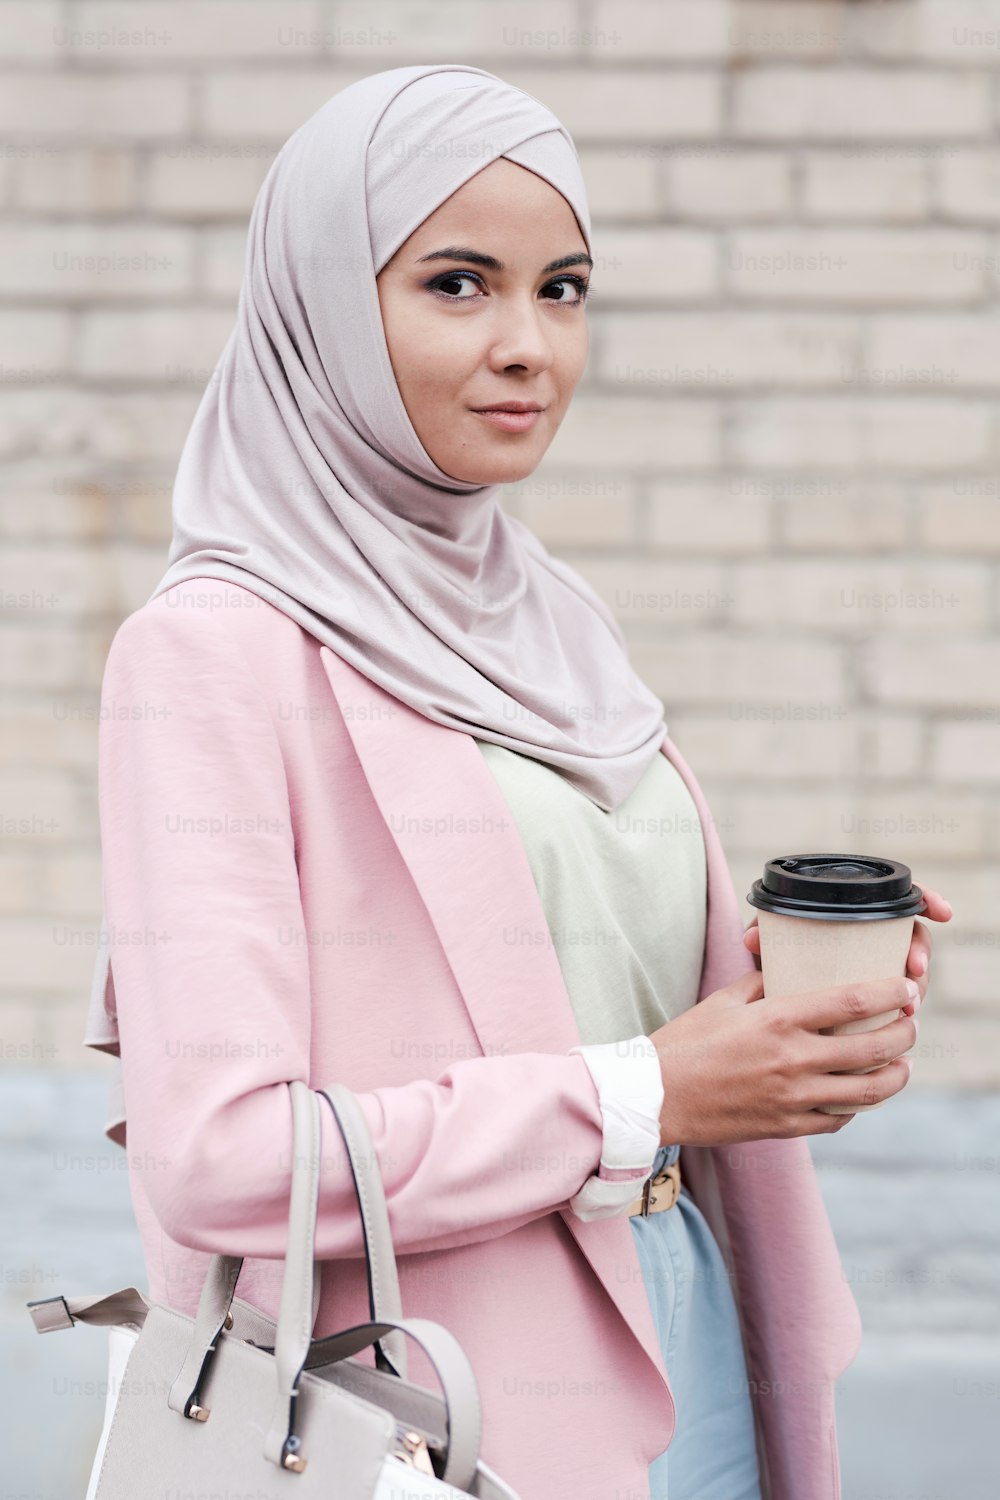 히잡, 풀오버, 핑크 가디건을 입은 젊은 무슬림 여성이 도시 환경에서 카메라 앞에 서서 커피를 마시고 있다